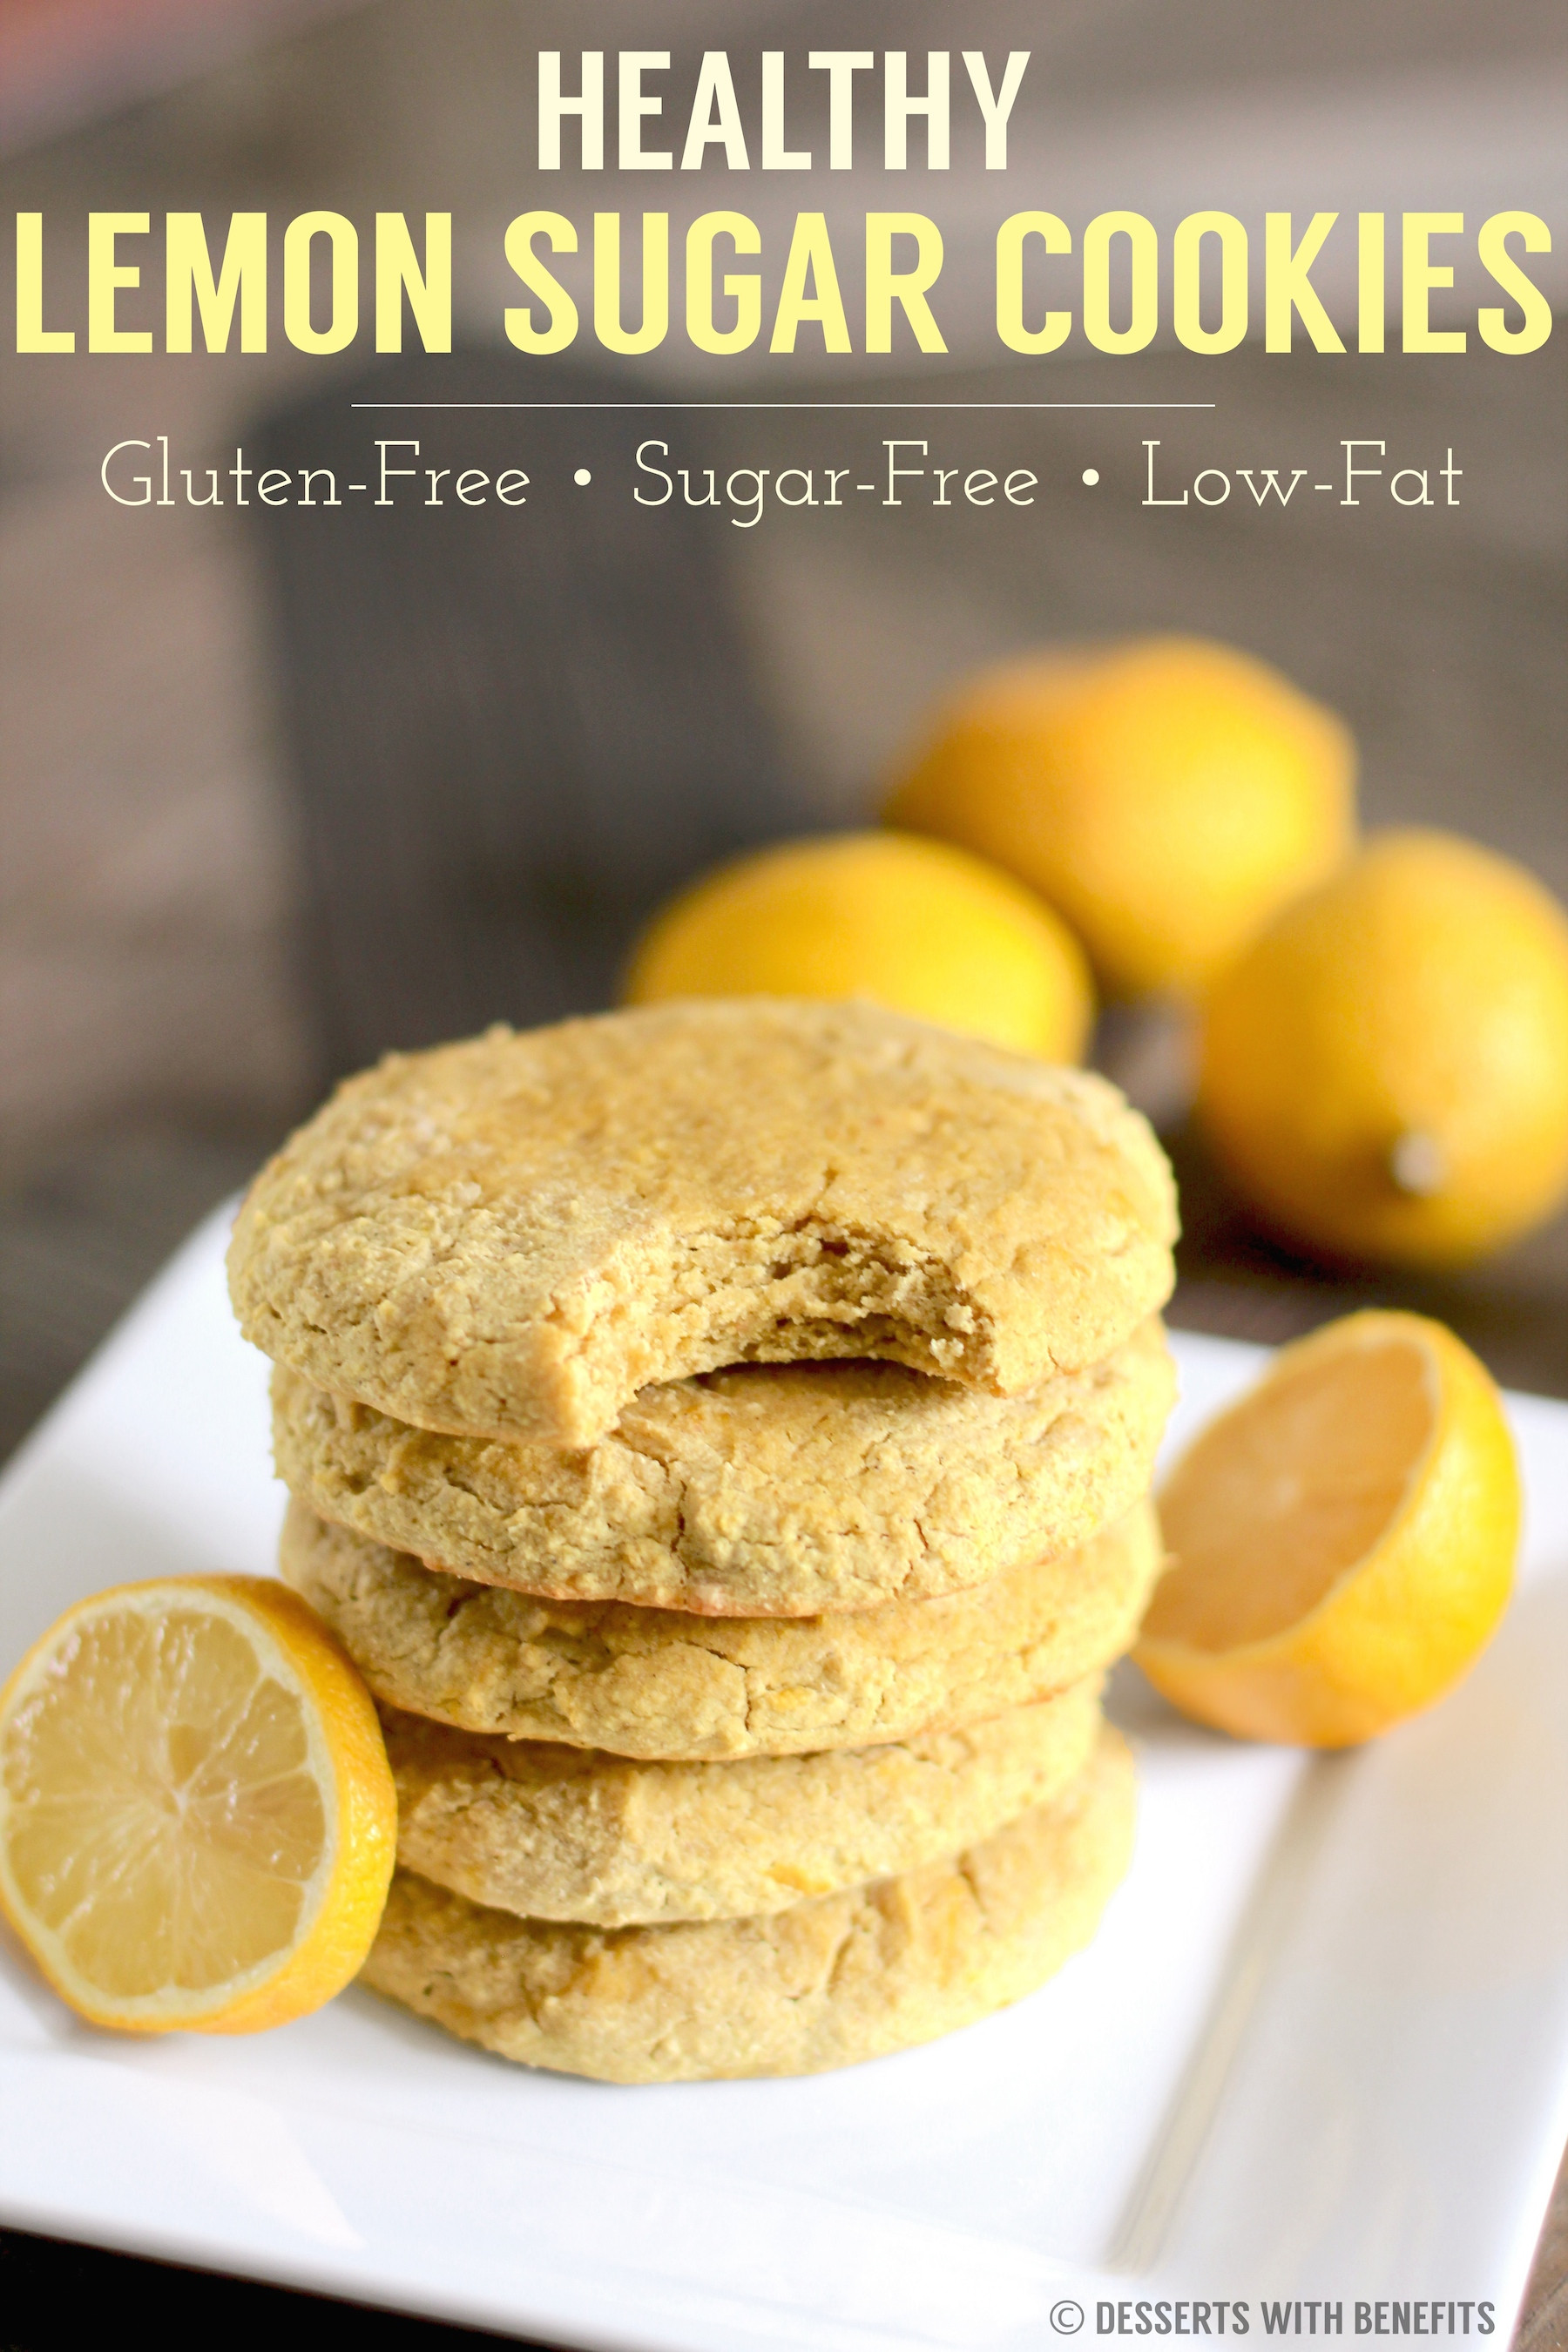 Gluten Free Dairy Free Sugar Free Desserts
 Healthy Gluten Free Lemon Sugar Cookies Recipe